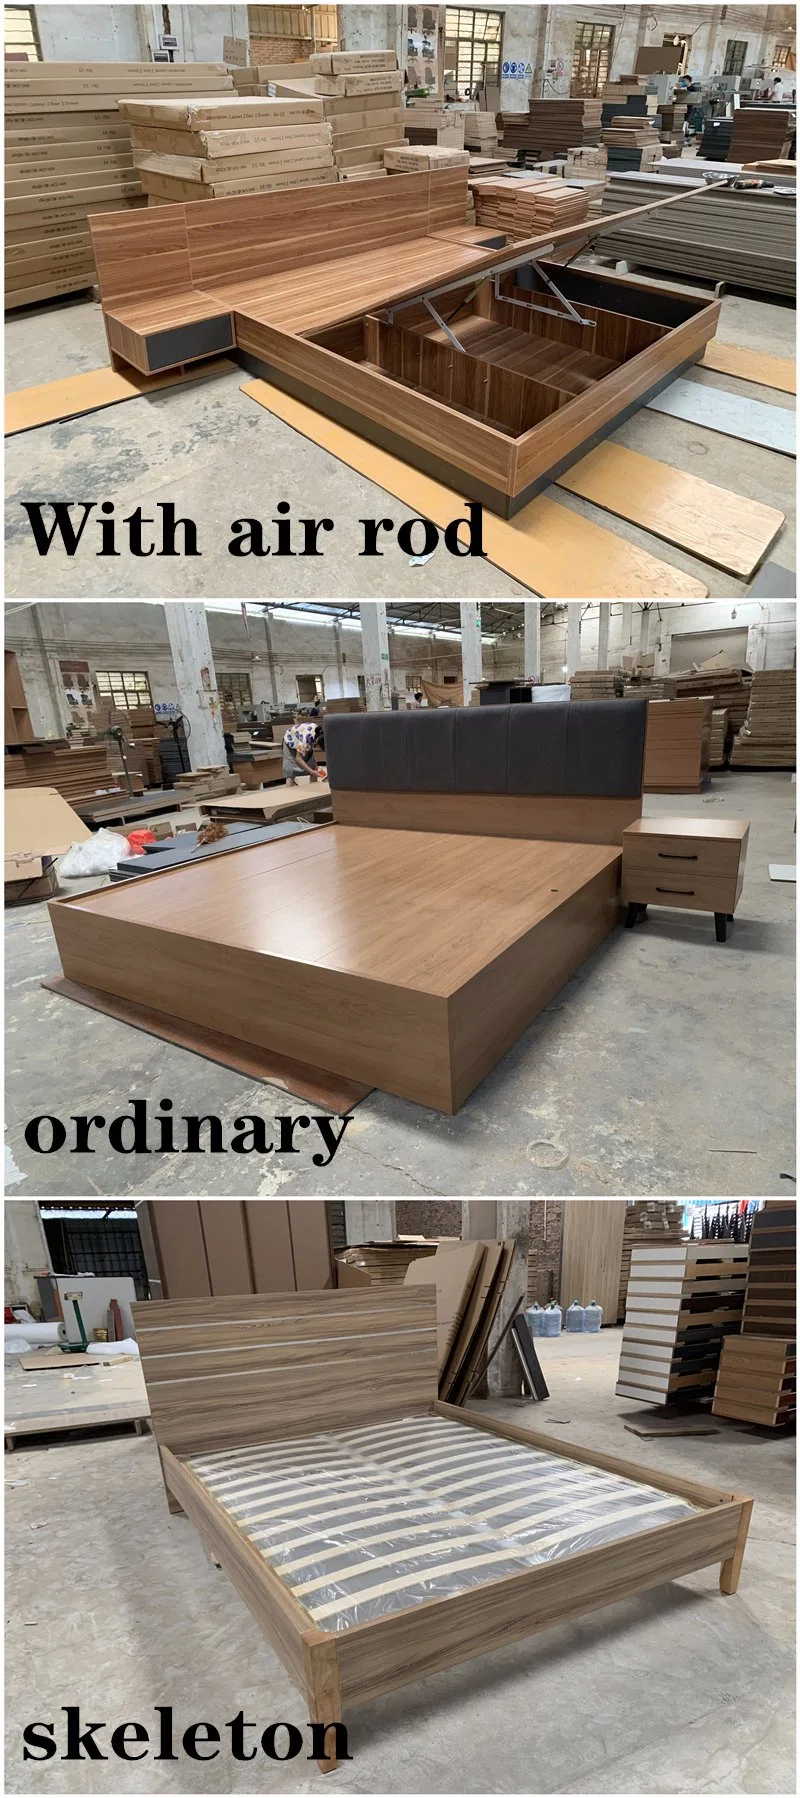 Good Price Manufacturer Complete Bedroom Furniture Sets